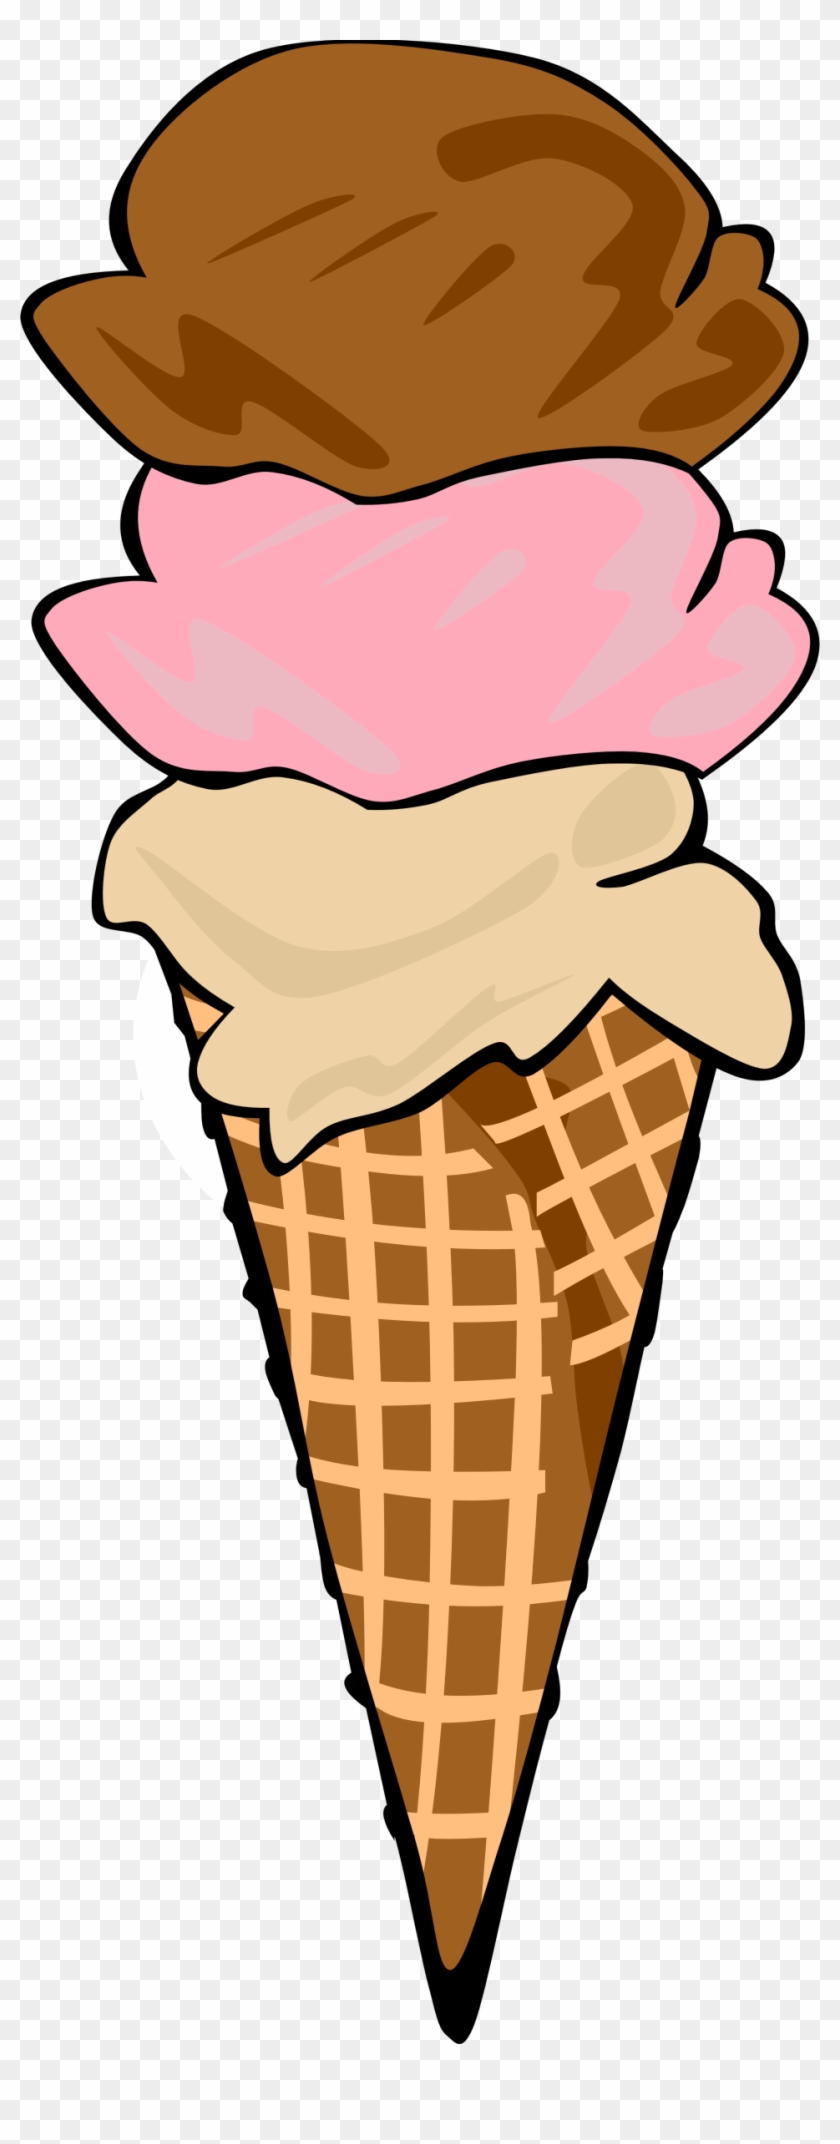 Ice Cream Cone Vanilla - Ice Cream Cone Clip Art #173109